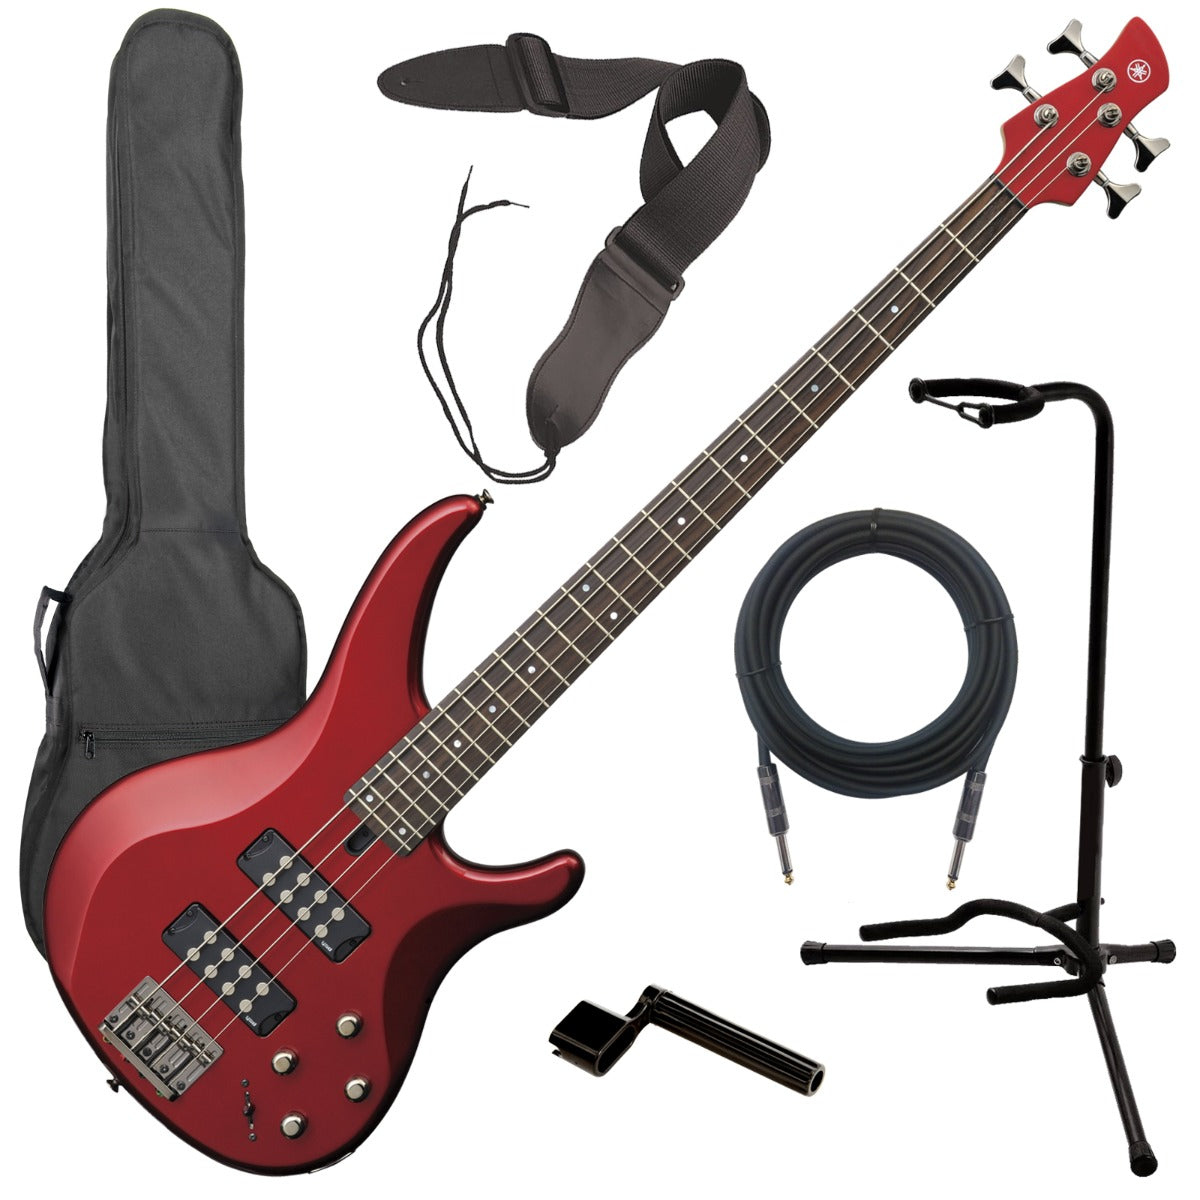 Yamaha TRBX304 4-String Bass Guitar - Candy Apple Red BASS ESSENTIALS BUNDLE